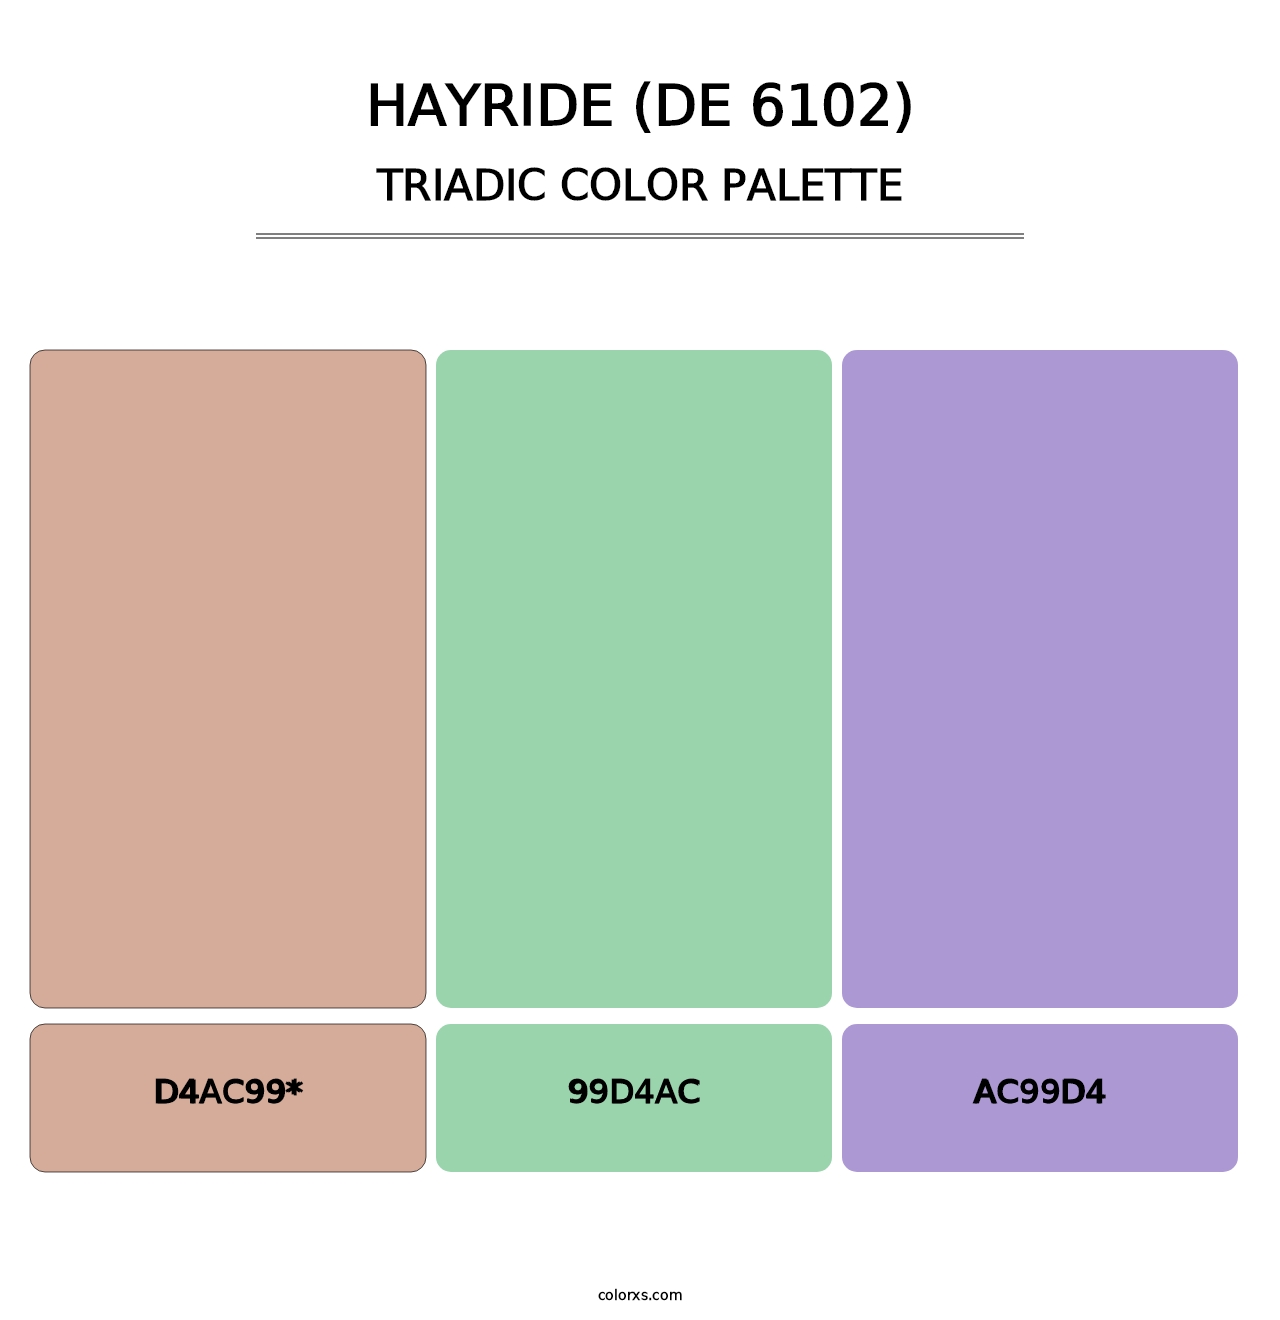 Hayride (DE 6102) - Triadic Color Palette